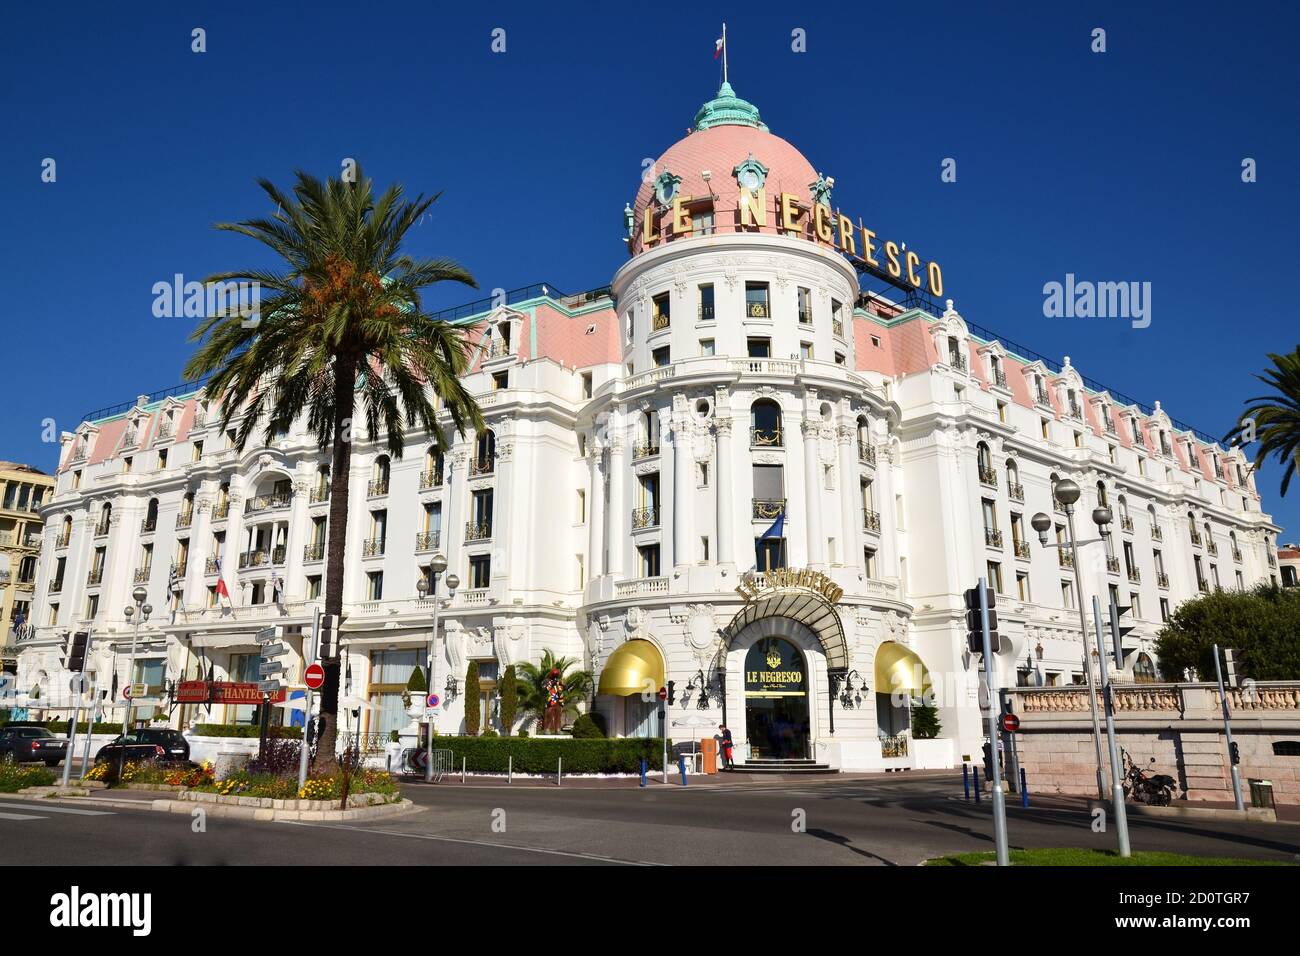 Francia, costa azzurra, Nizza città, il Negresco Palace è un hotel di lusso composto da 121 camere e 21 suite, situato sulla Promenade des Anglais. Foto Stock